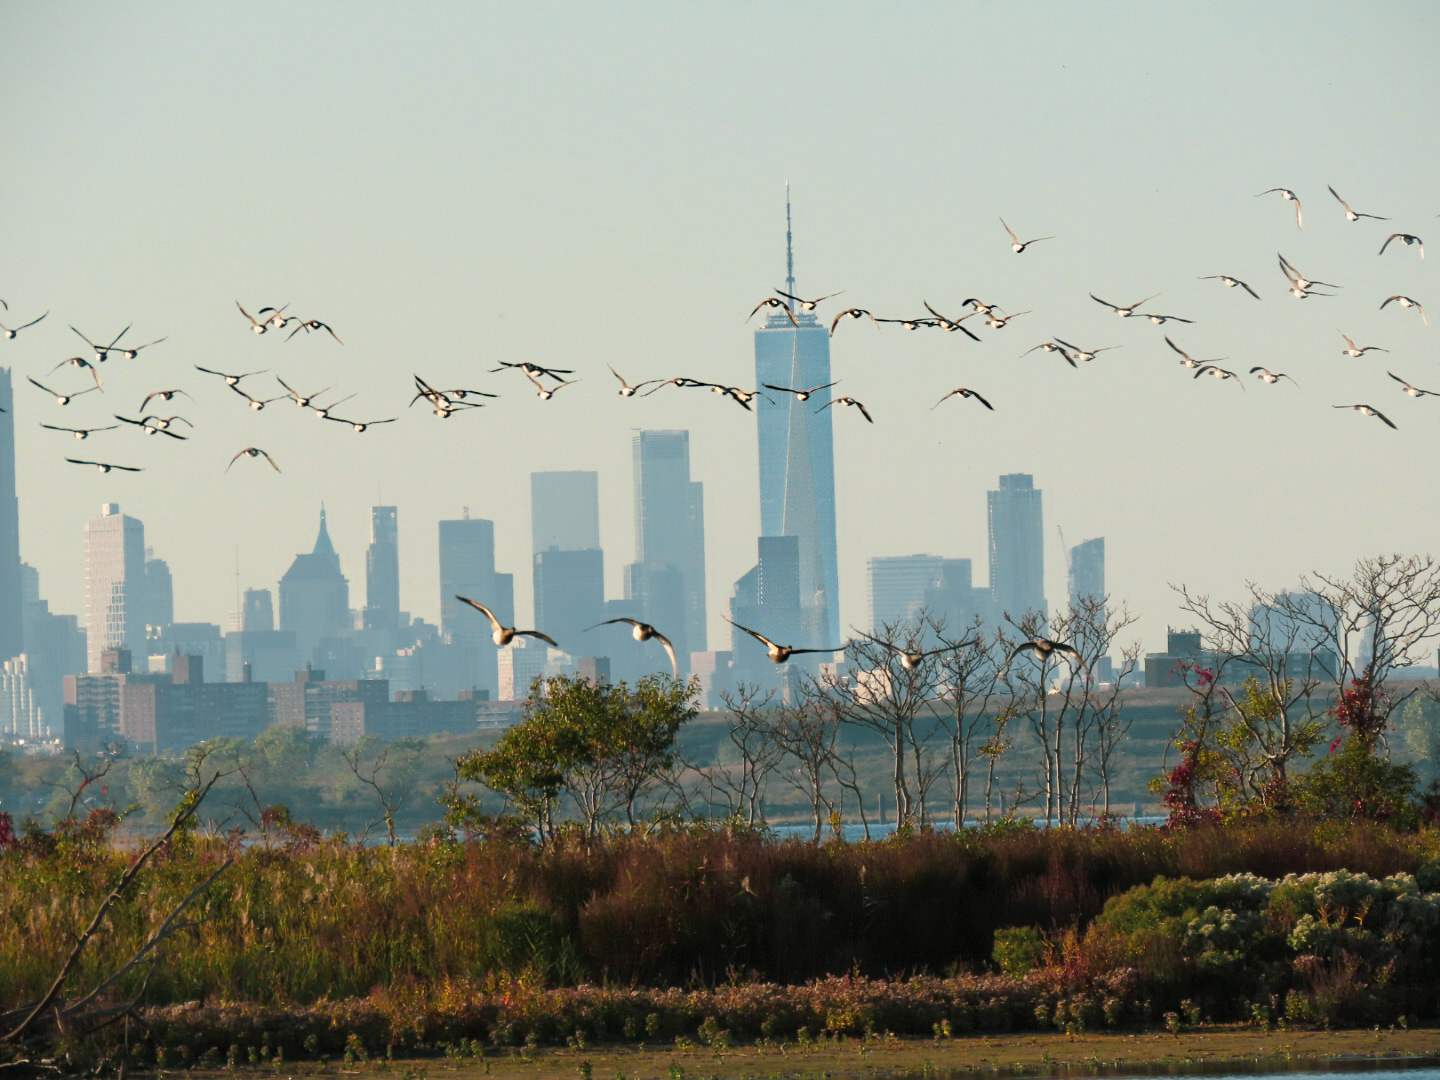 Group of birds against a city skyline